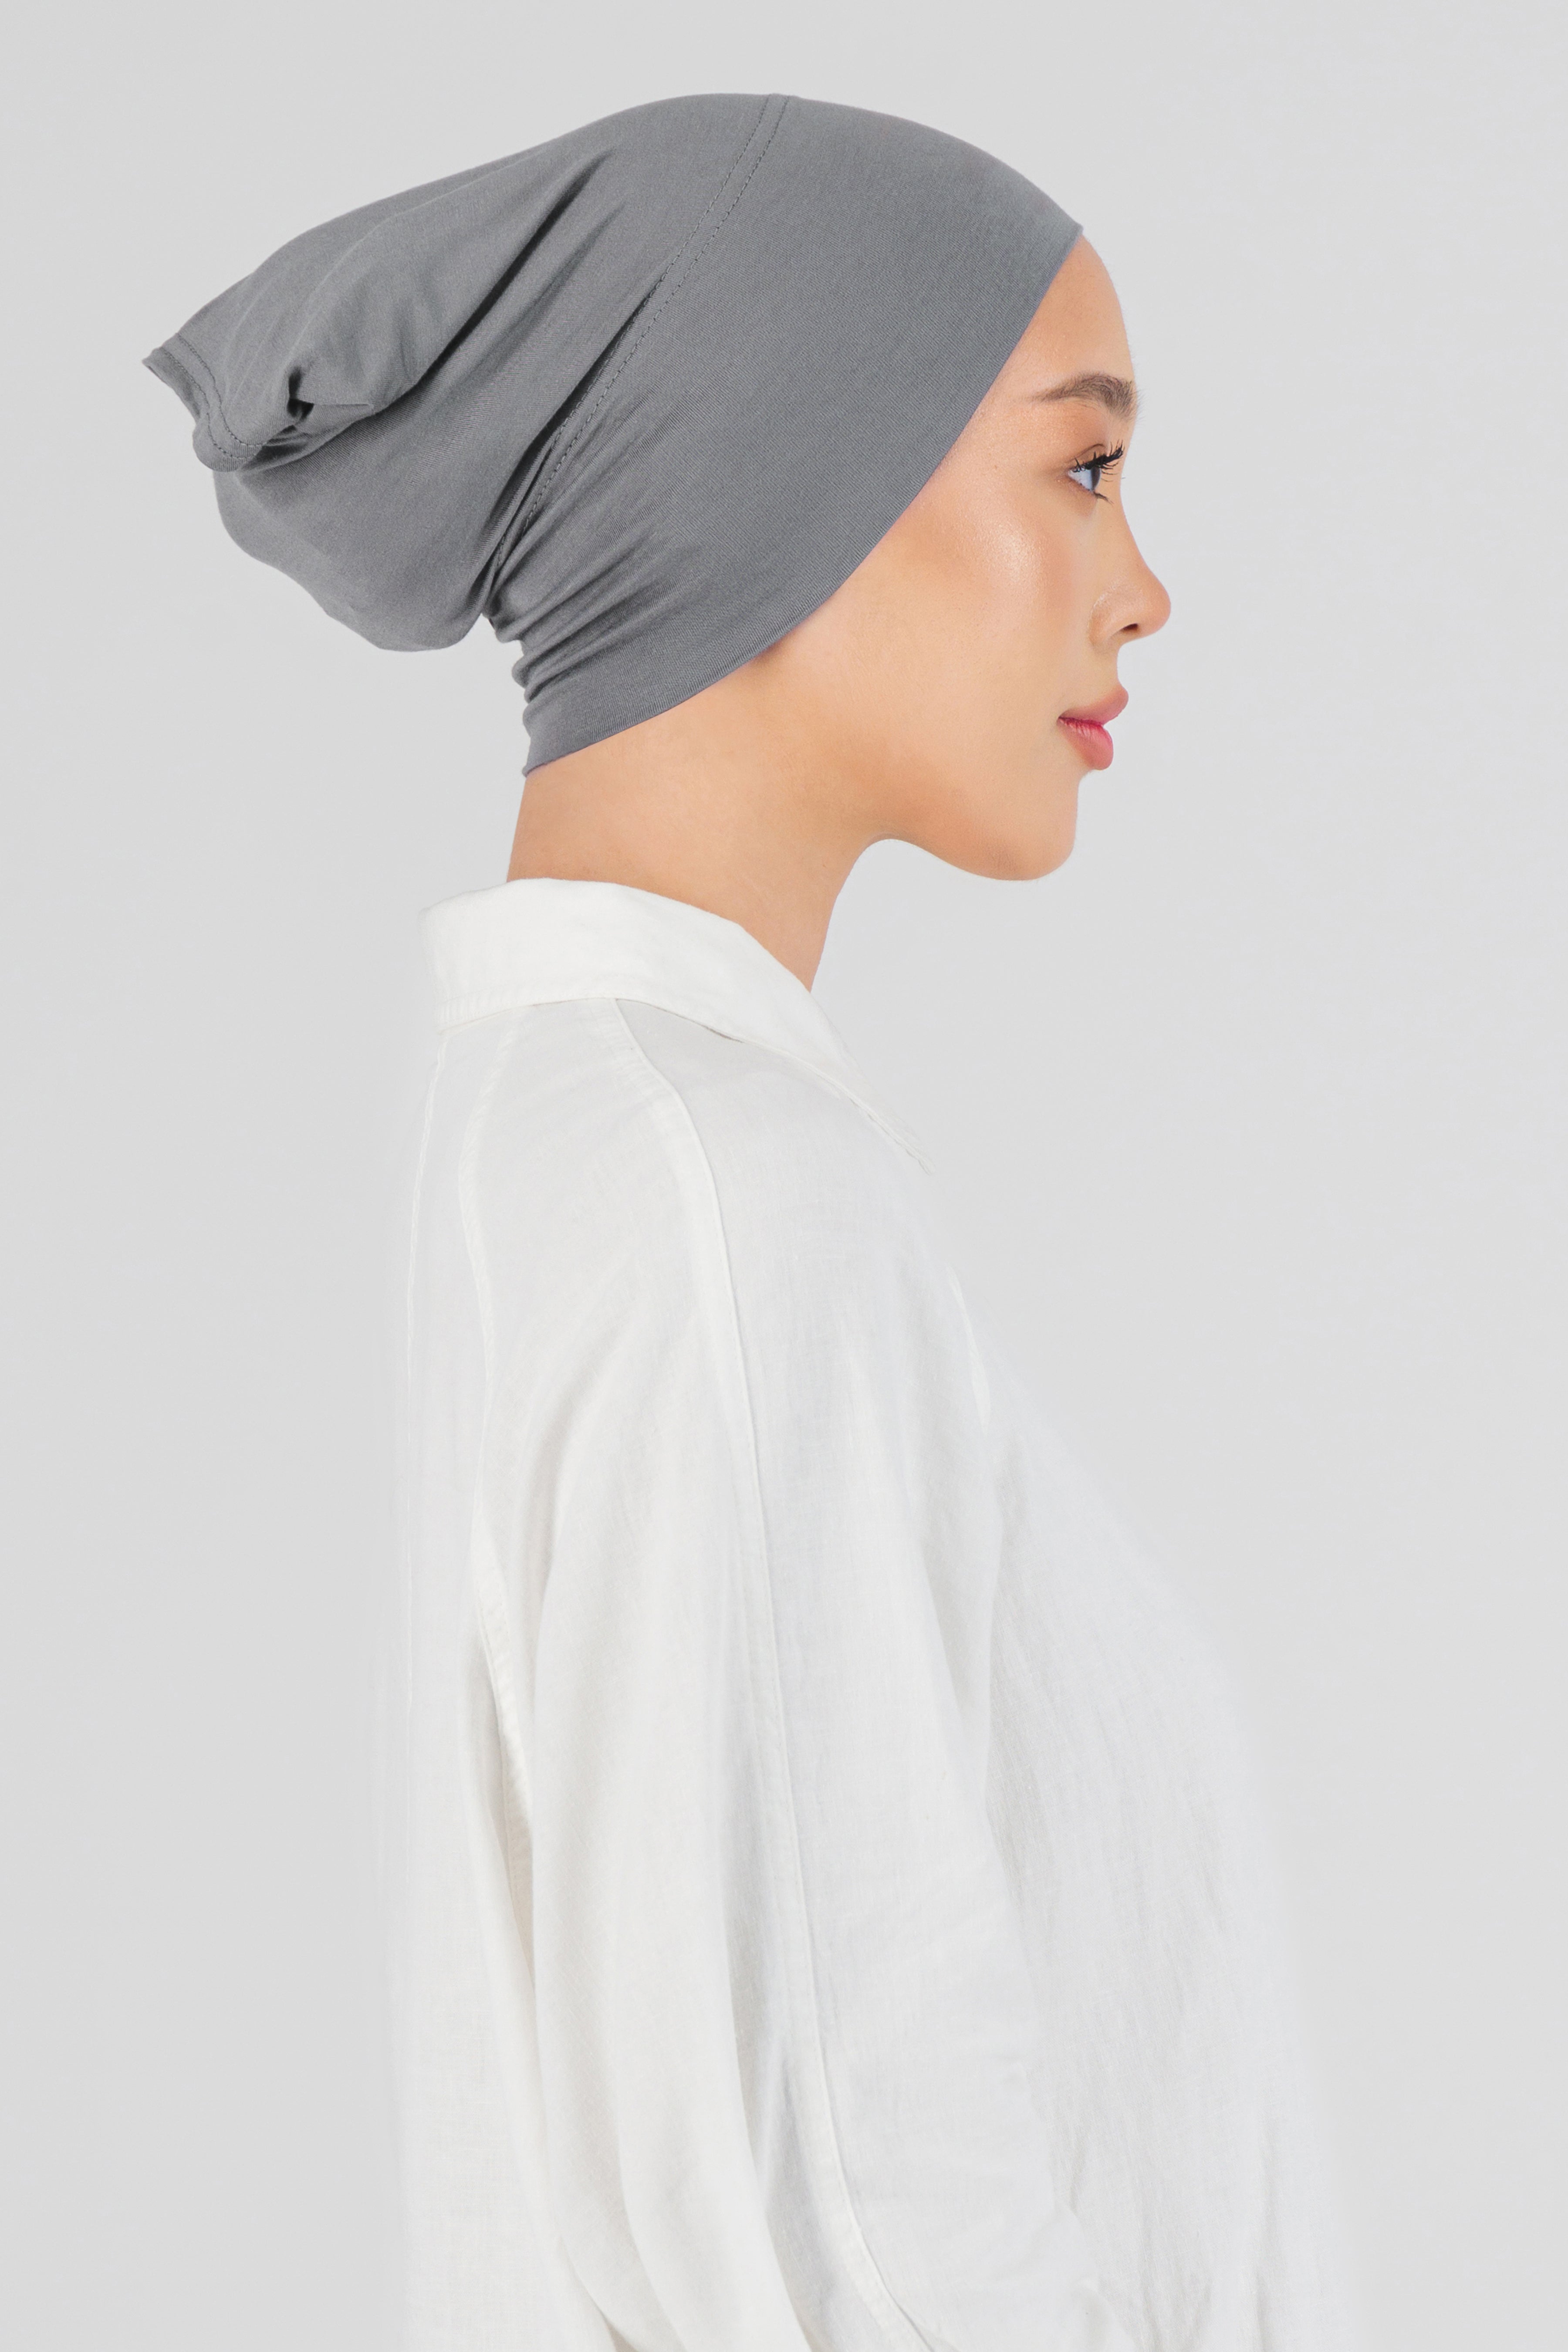 CA - Matching Chiffon Hijab Set - Steel